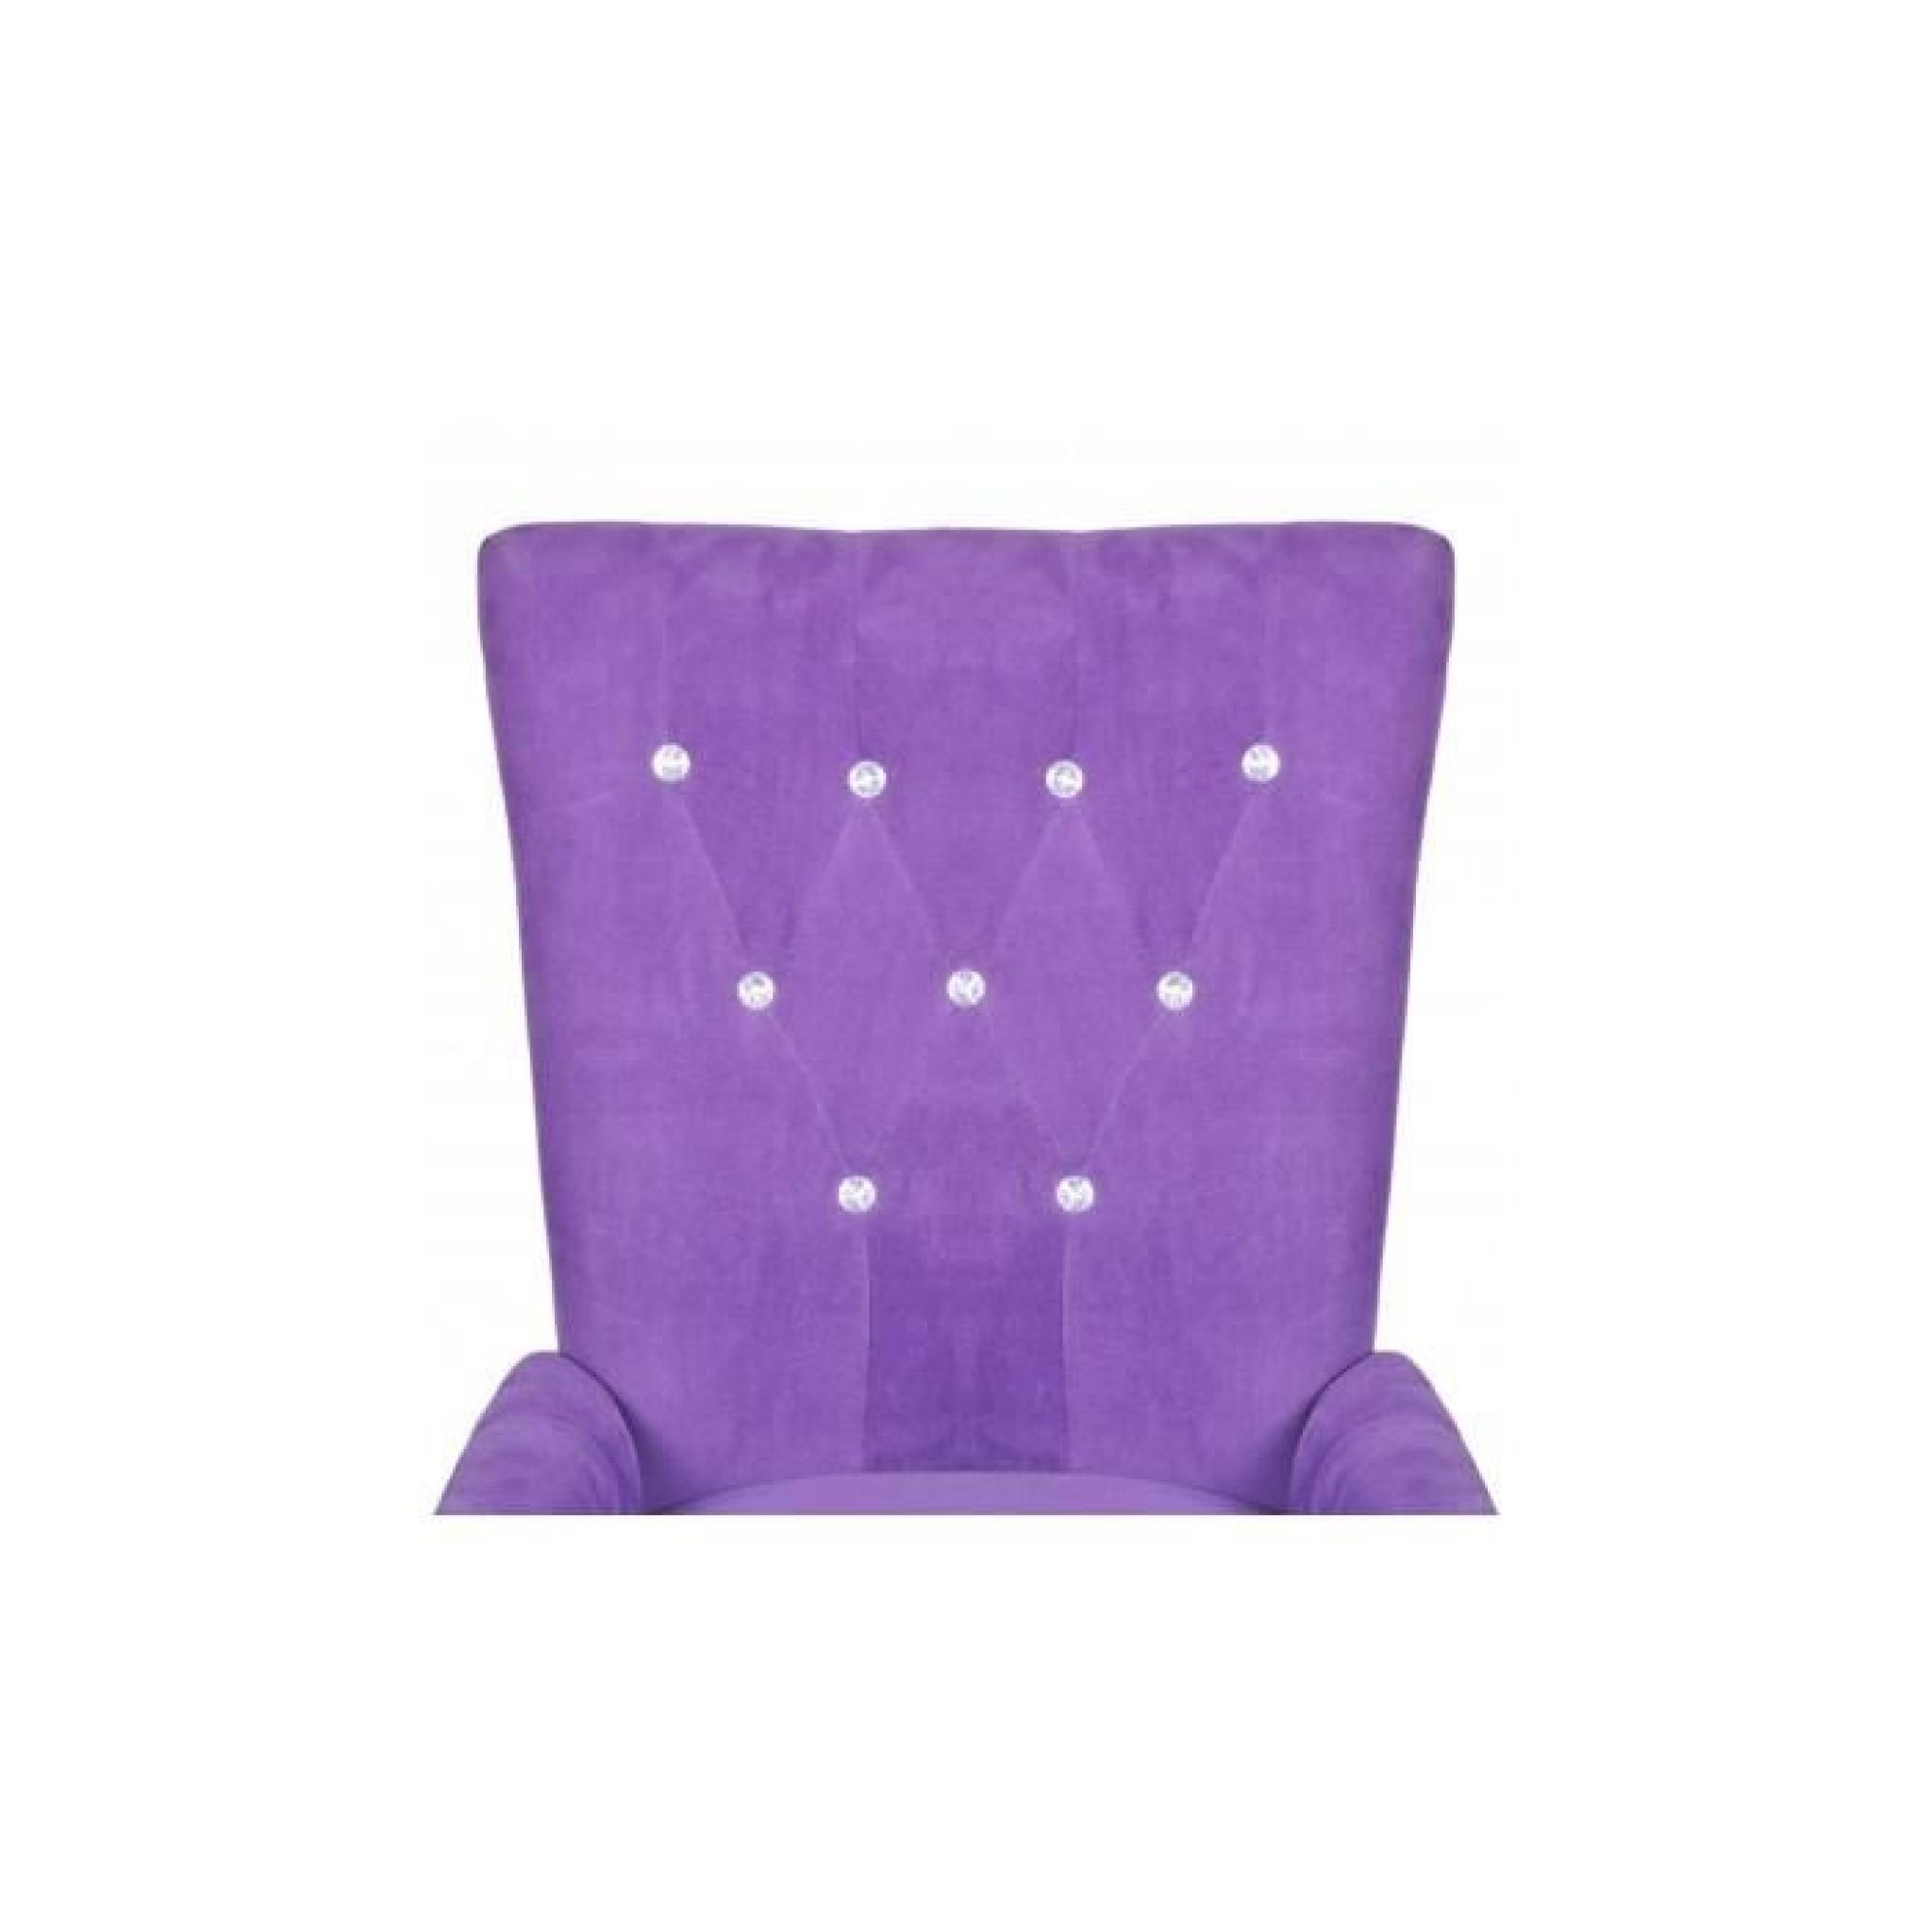 Chaise capitonnée velours violet 54 x 56 x 106 cm Stylashop pas cher